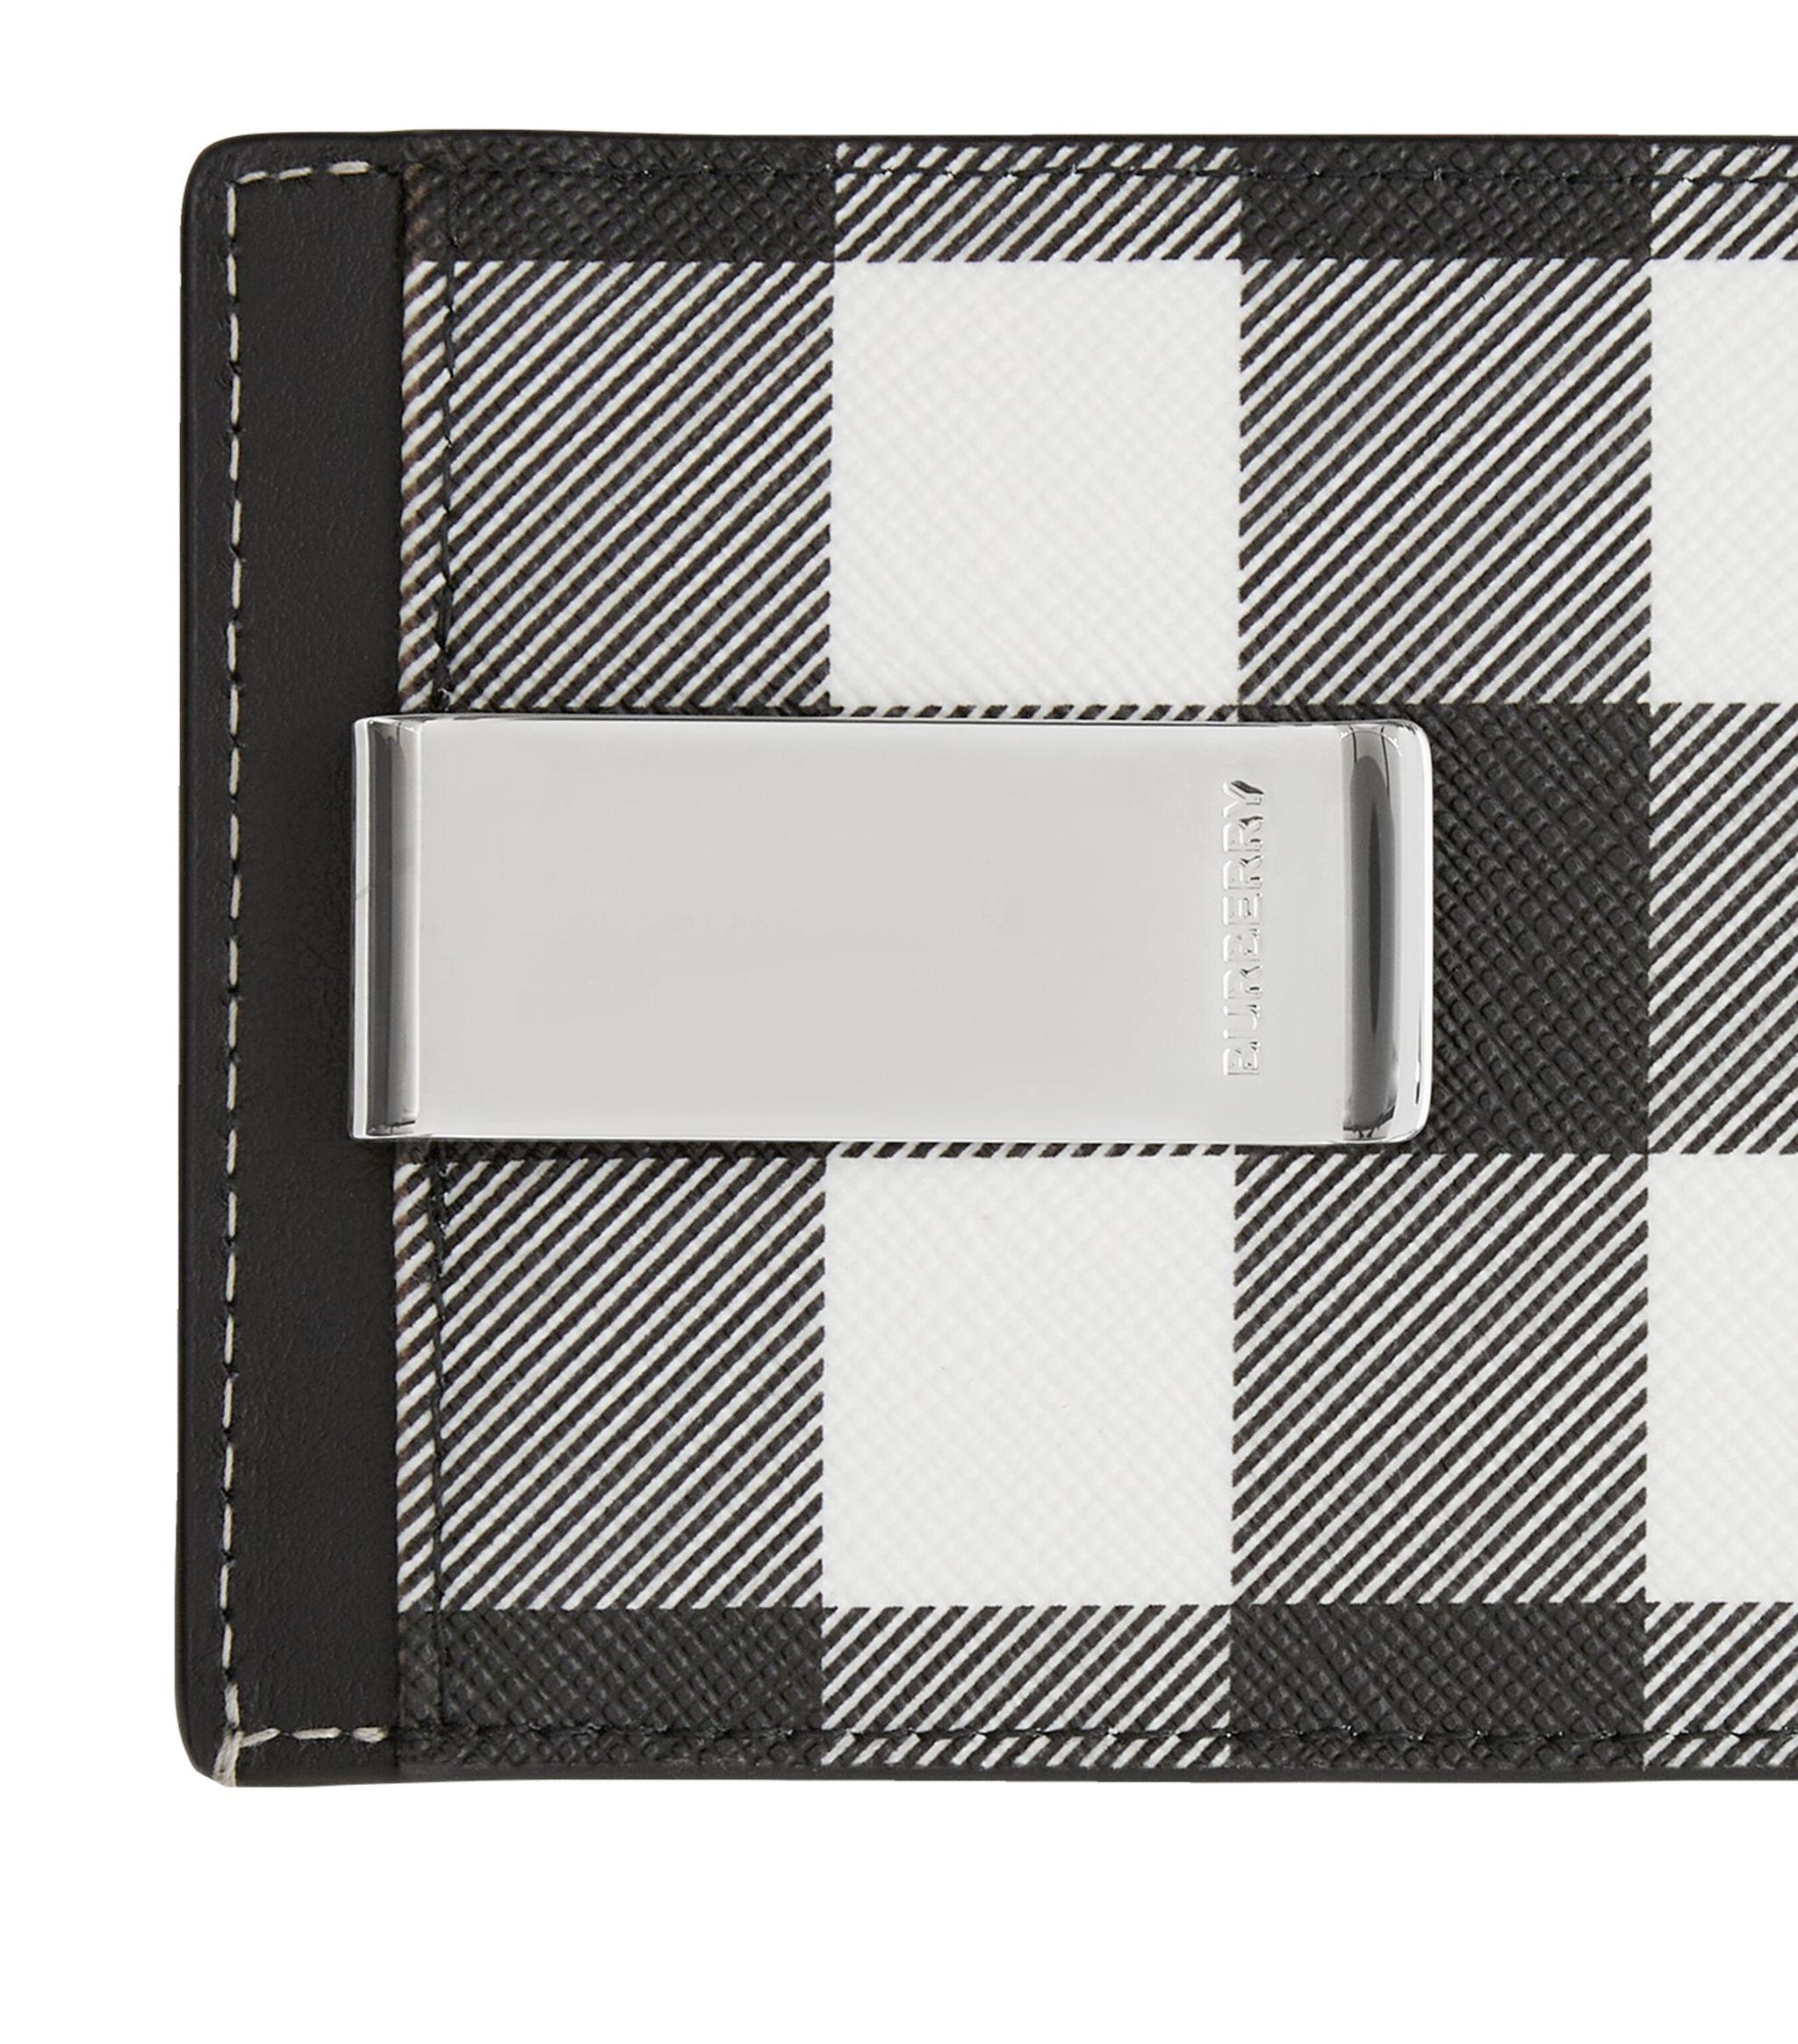 Burberry: Black & White Check Card Holder